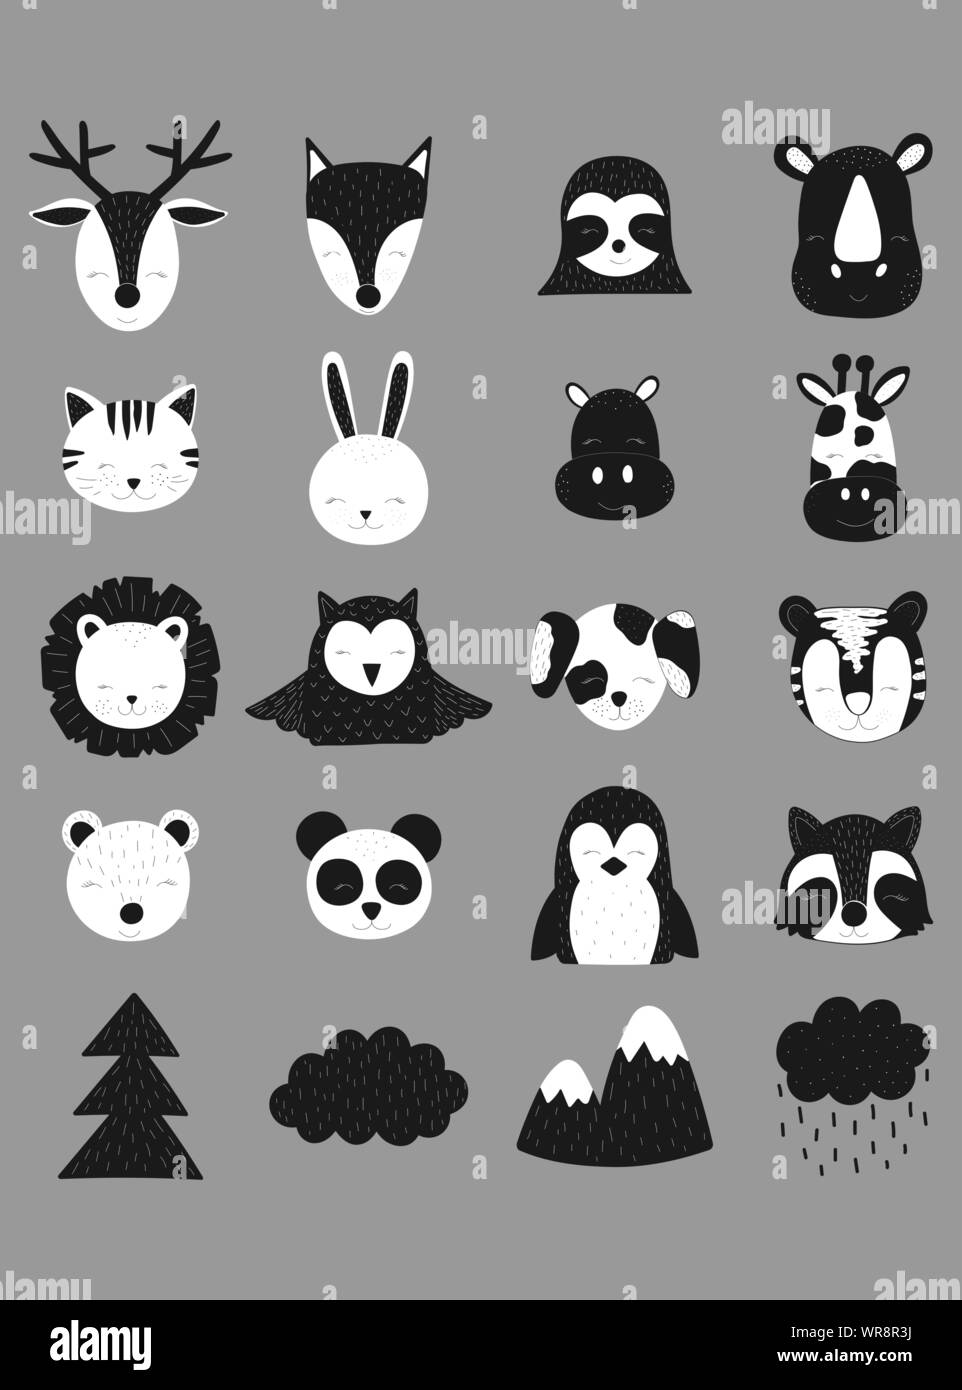 Scandinavian illustrazione vettoriale. Disegnate a mano simpatici animali. Cervi, volpi, sloth, rinoceronte, cat, lepre, ippopotamo, giraffe, leoni, il gufo, cane, tiger, orso Illustrazione Vettoriale